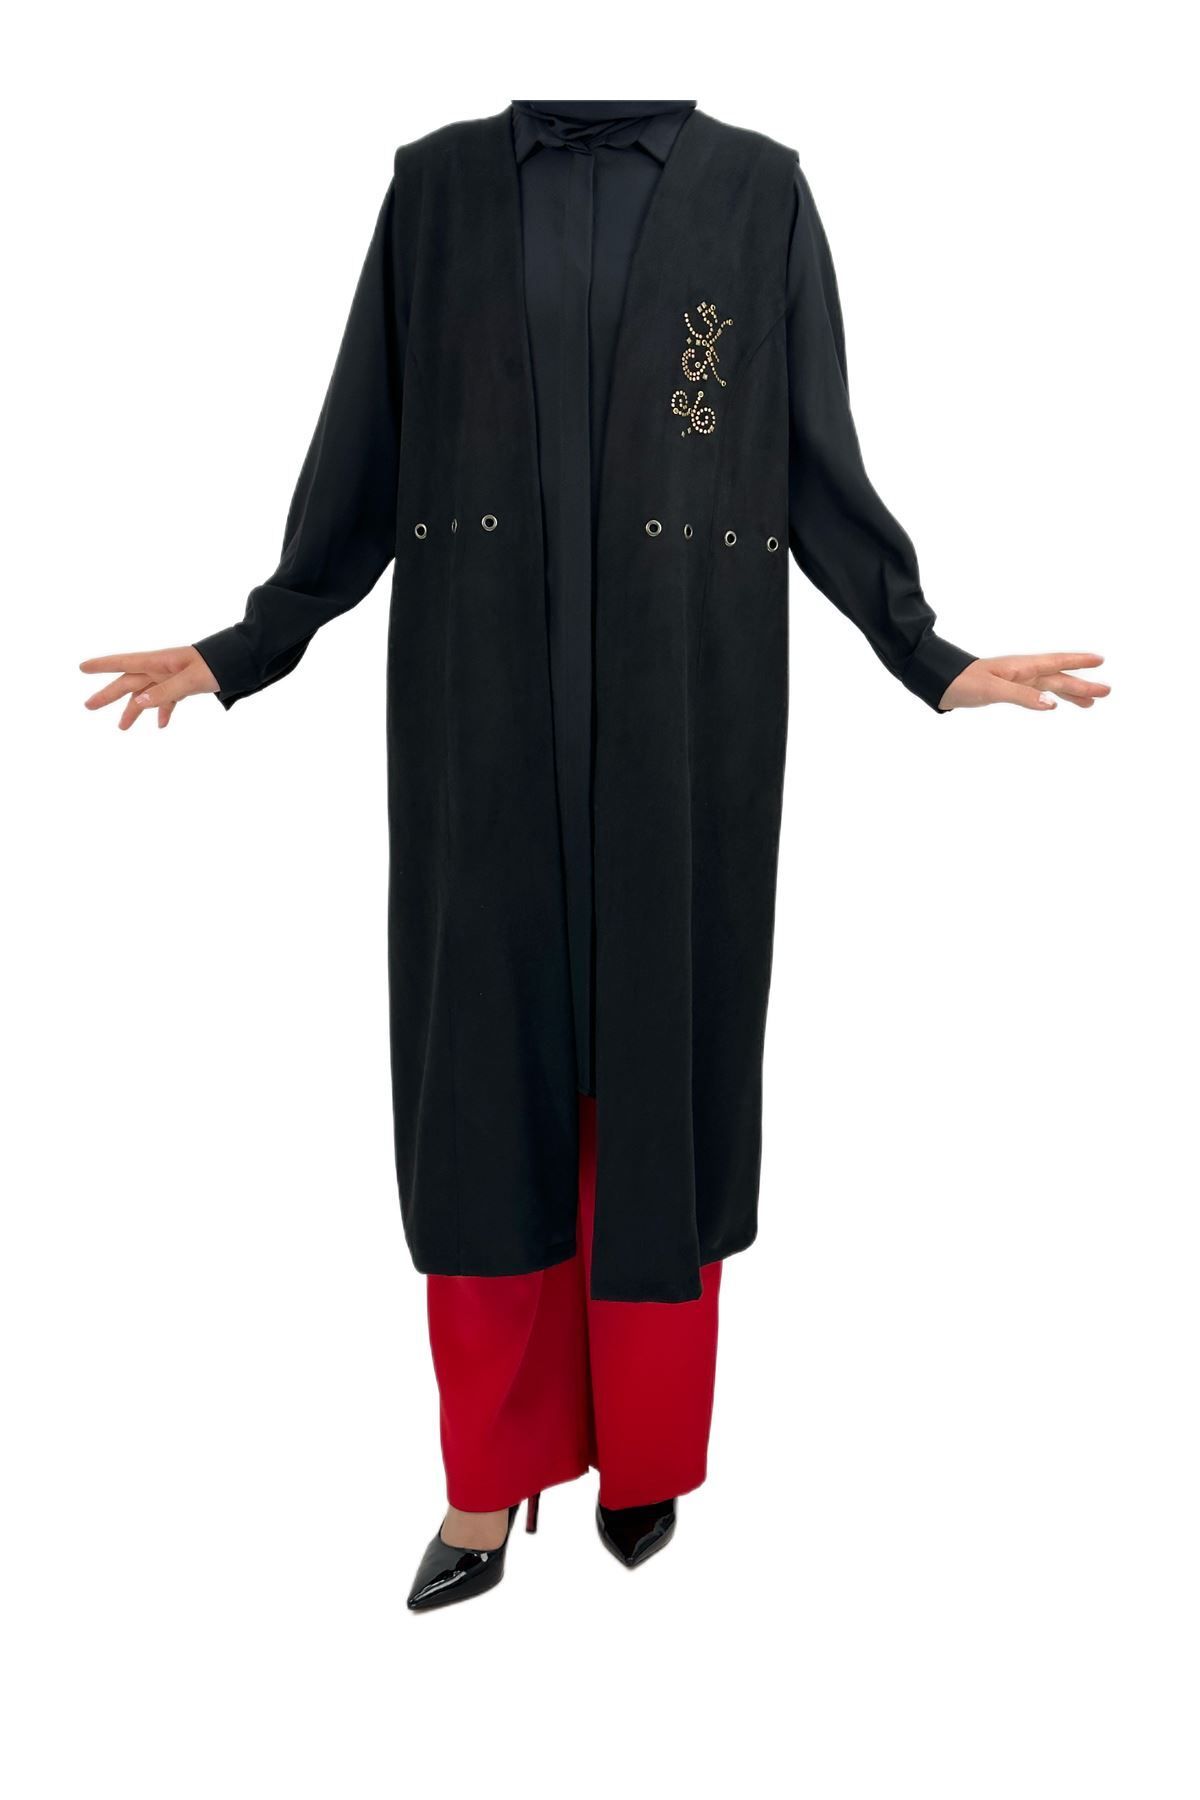 ottoman wear OTW49278 Gömlek-Yelek Takım Siyah